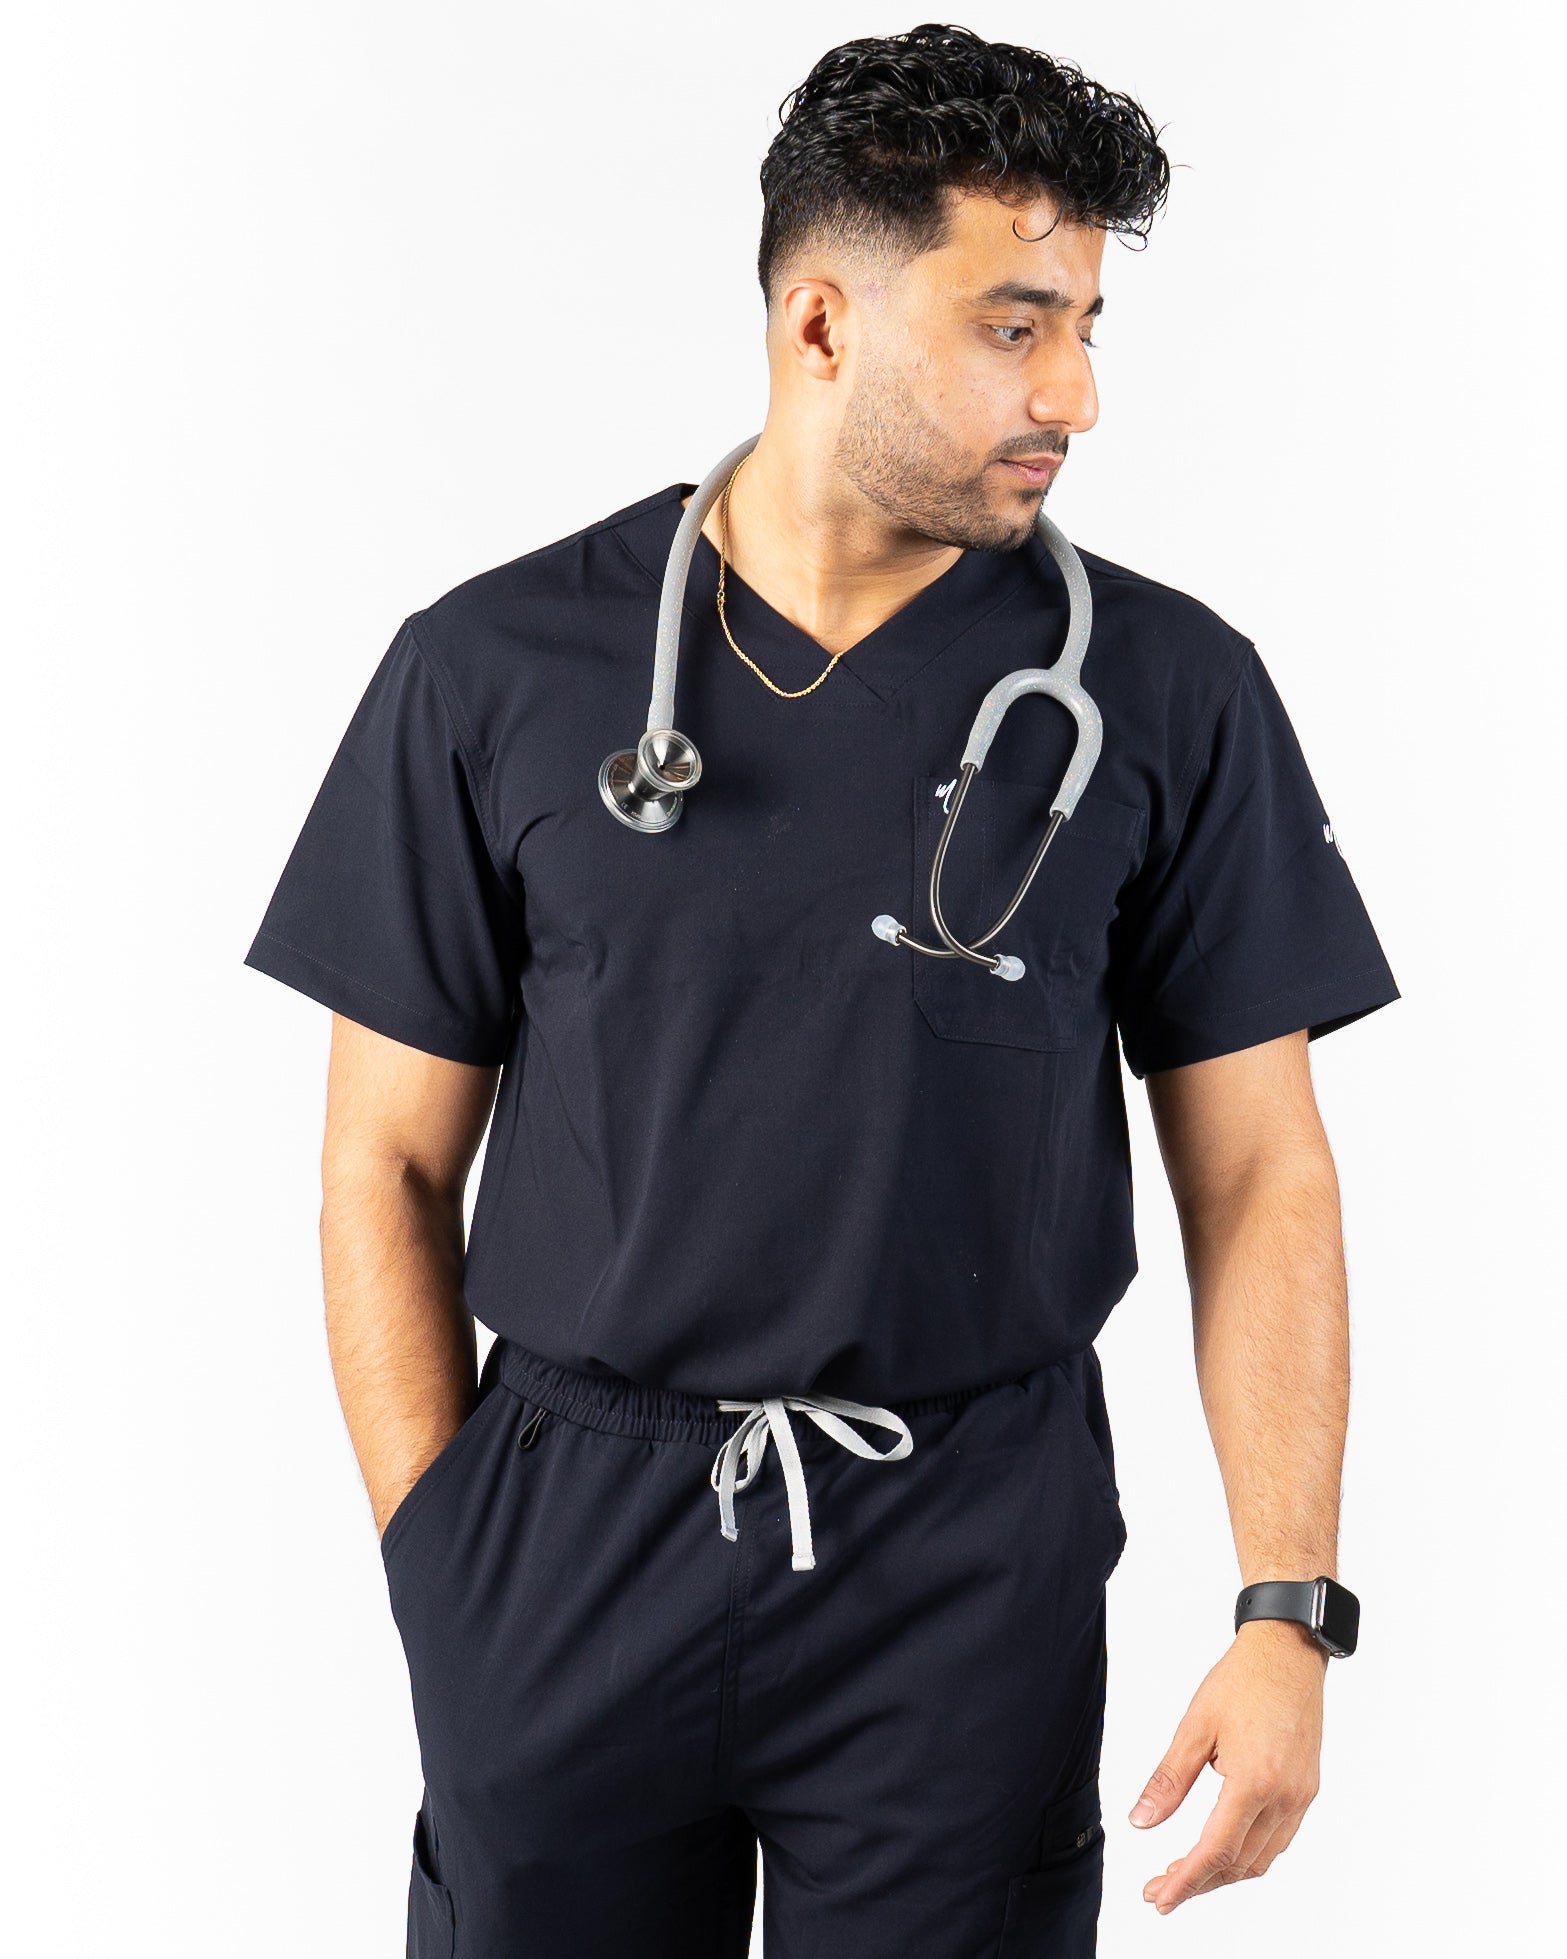 men's Dark Navy Blue Scrub Top - Jogger Scrubs by Millennials In Medicine (Mim Scrubs)